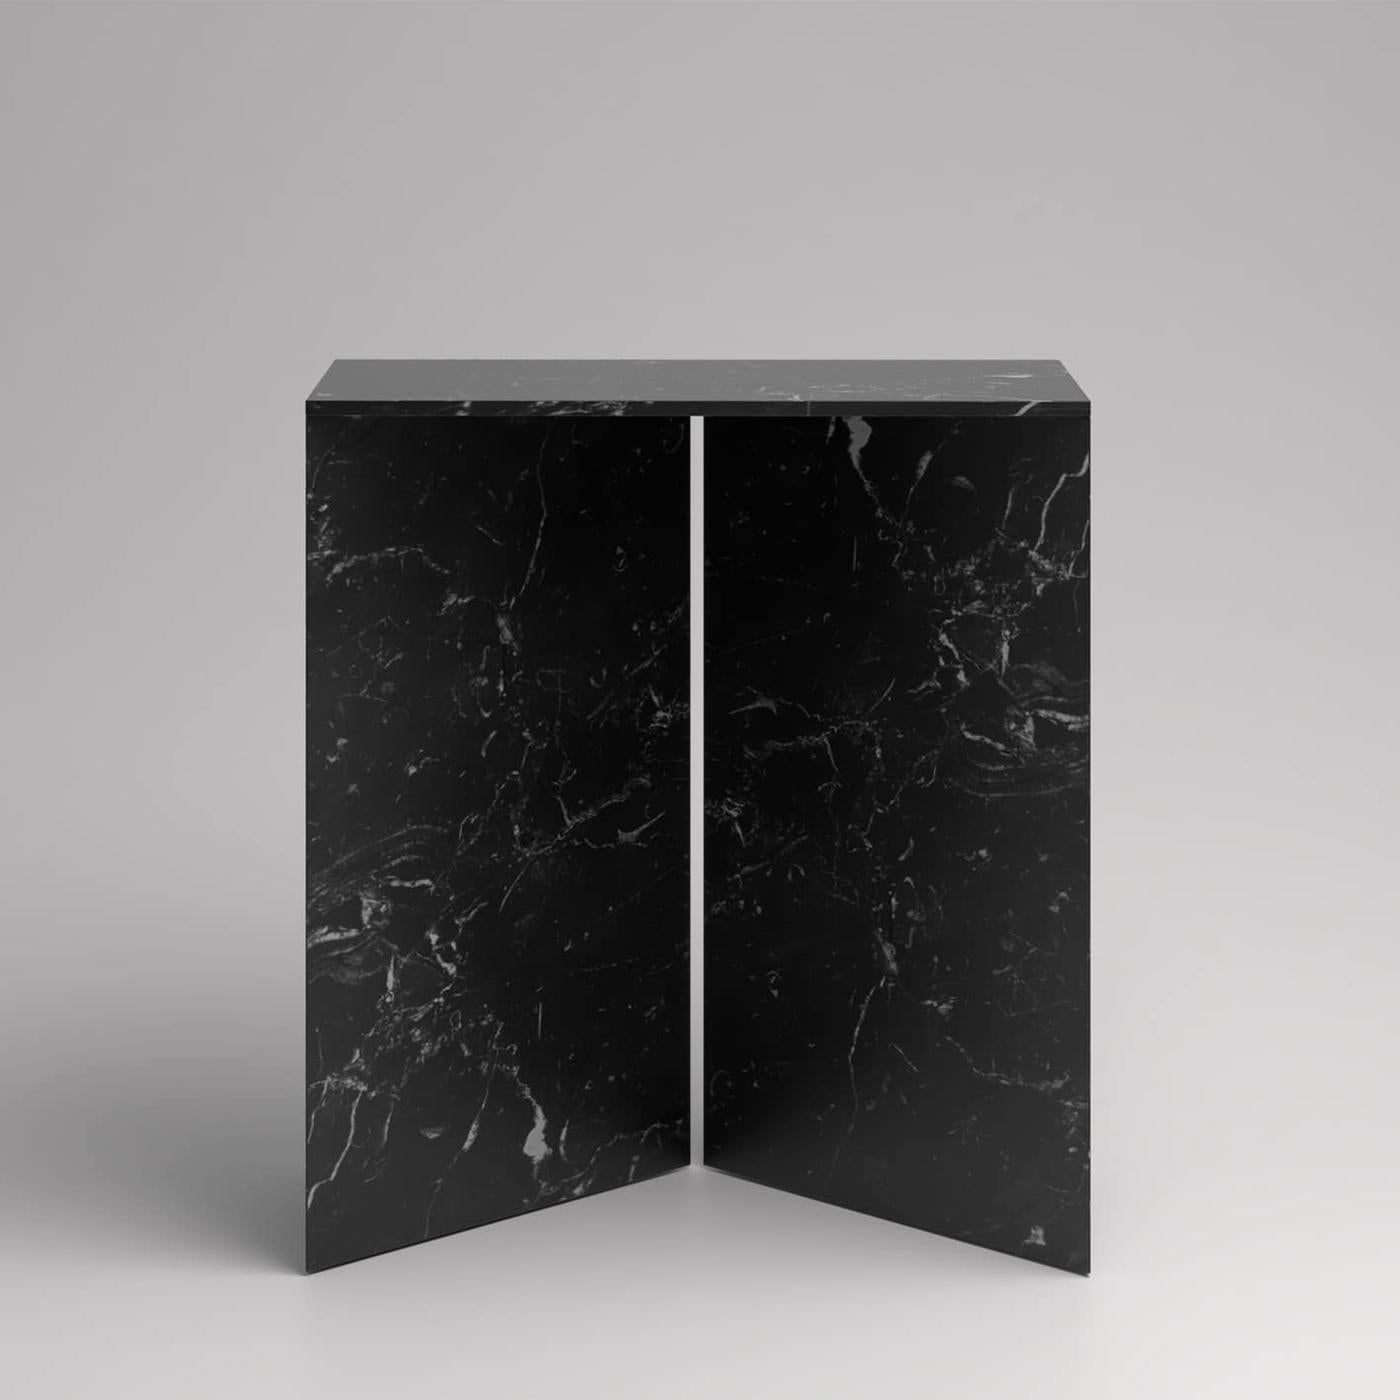 Table Console Duo Marble avec marbre noir massif 
assemblage de dalles, marbre noir sculpté et poli.
Également disponible en marbre blanc, sur demande.
 